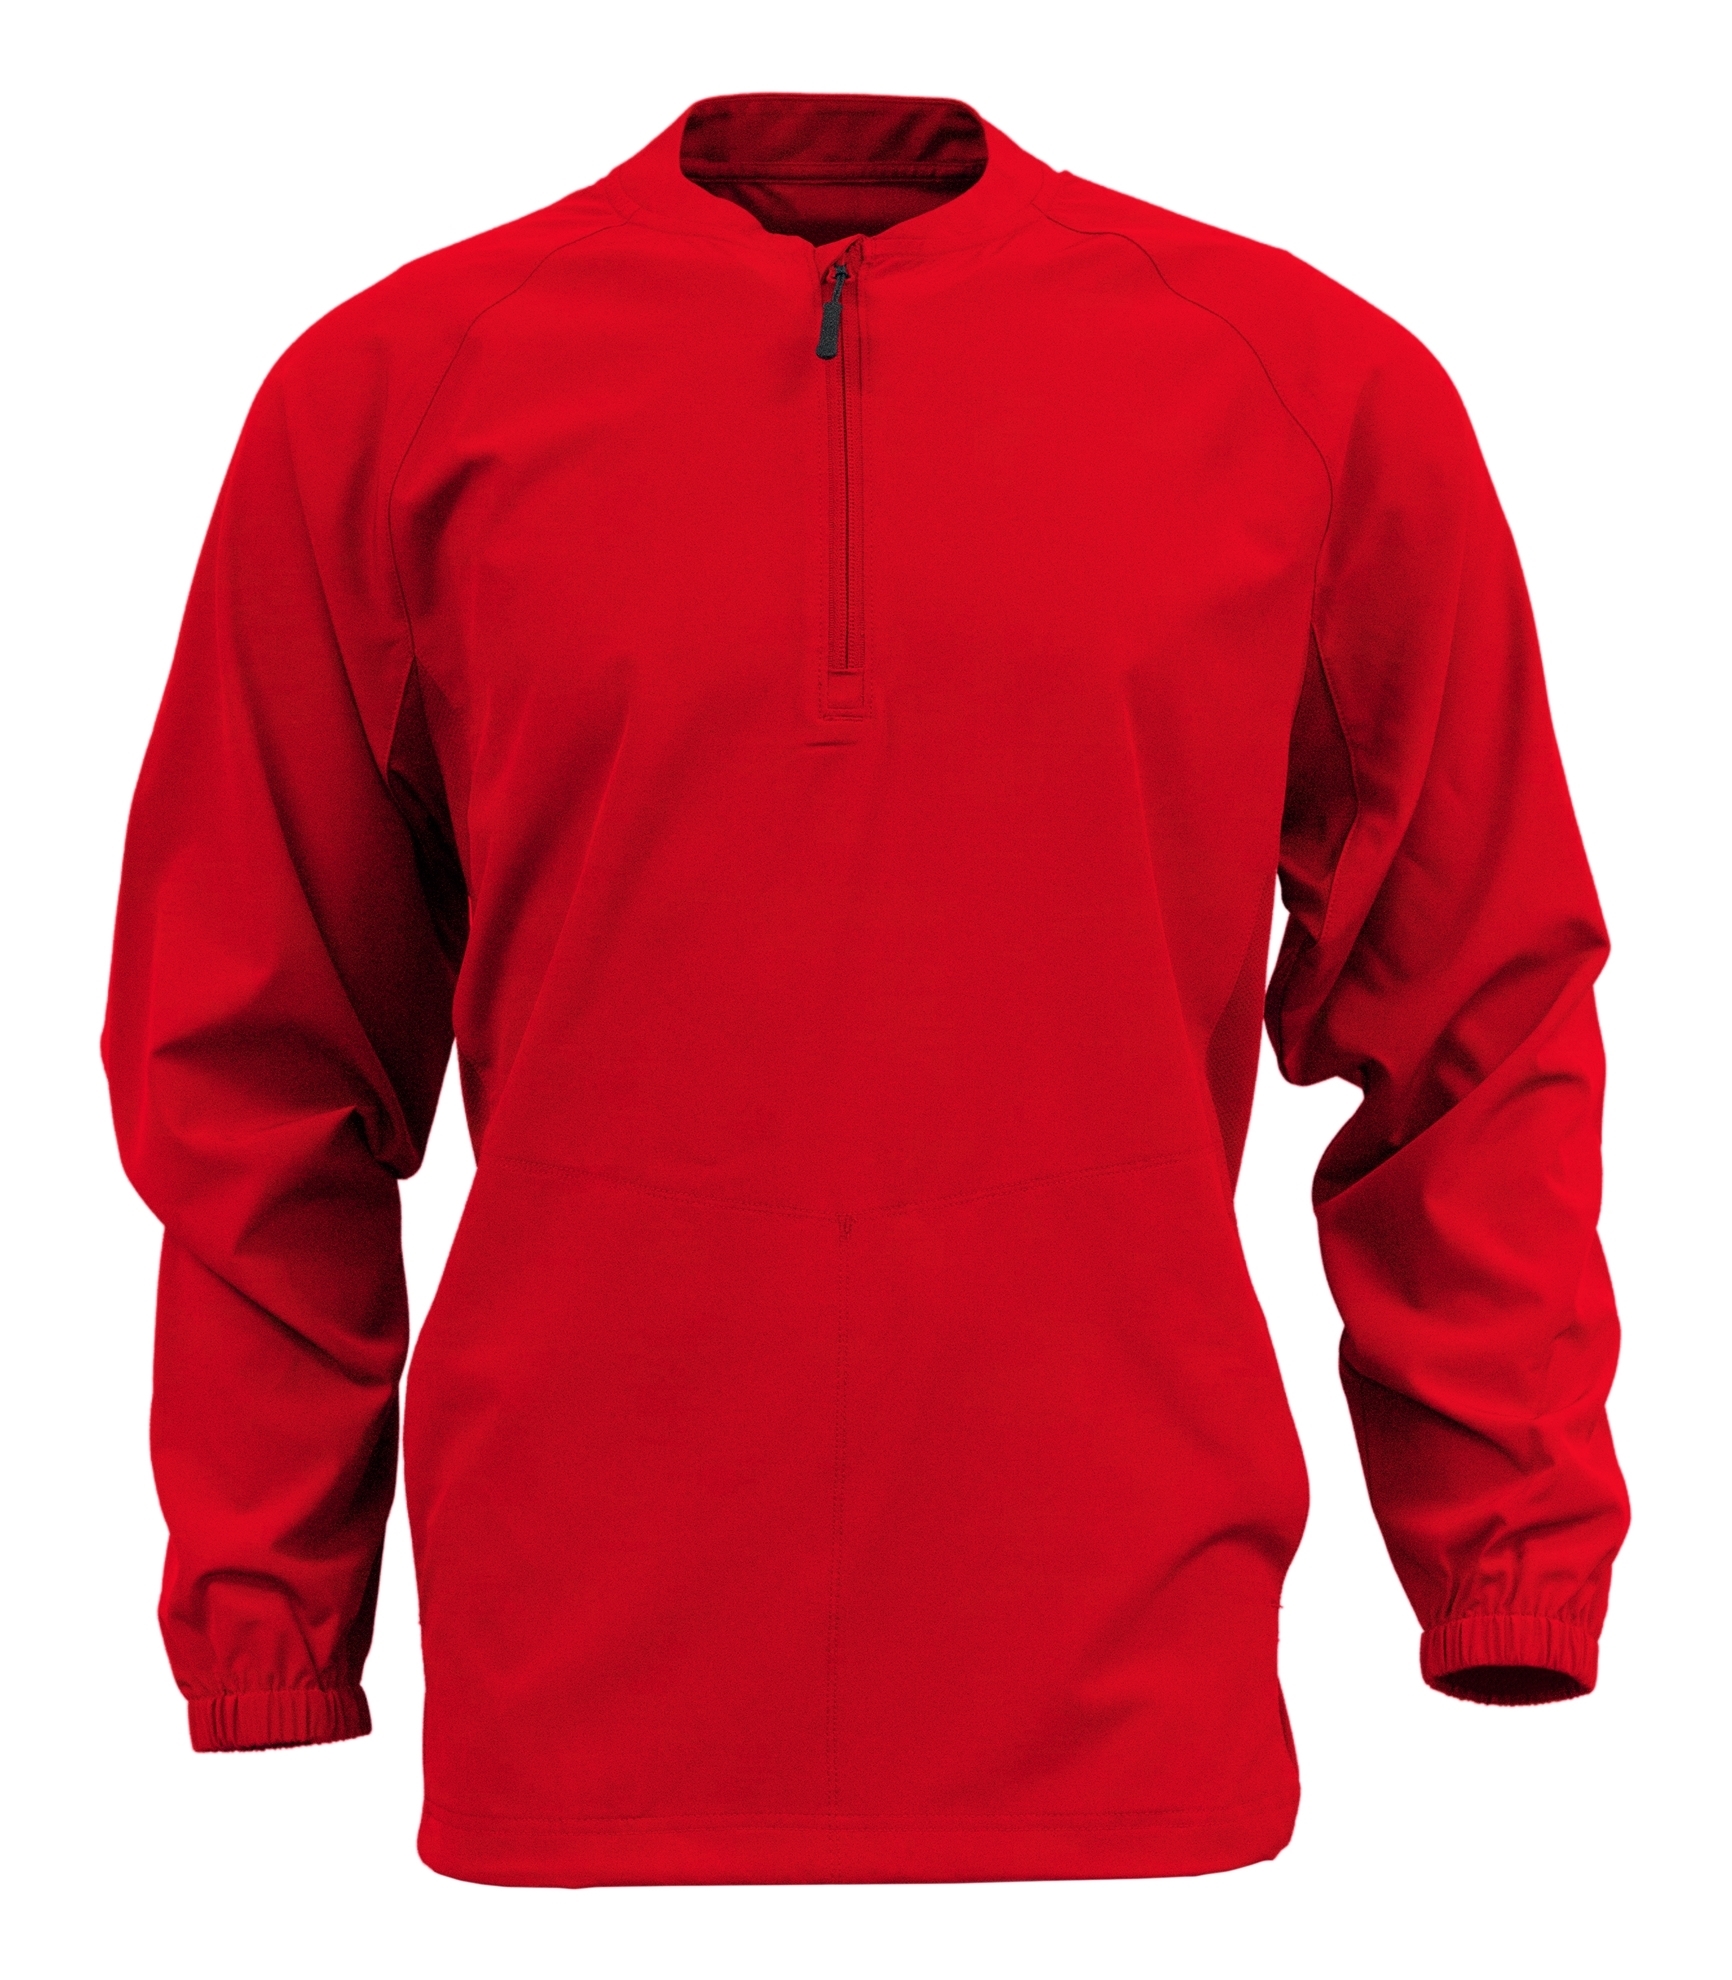 BAW Athletic Wear CJ138Y - Youth Long Sleeve Overshirt